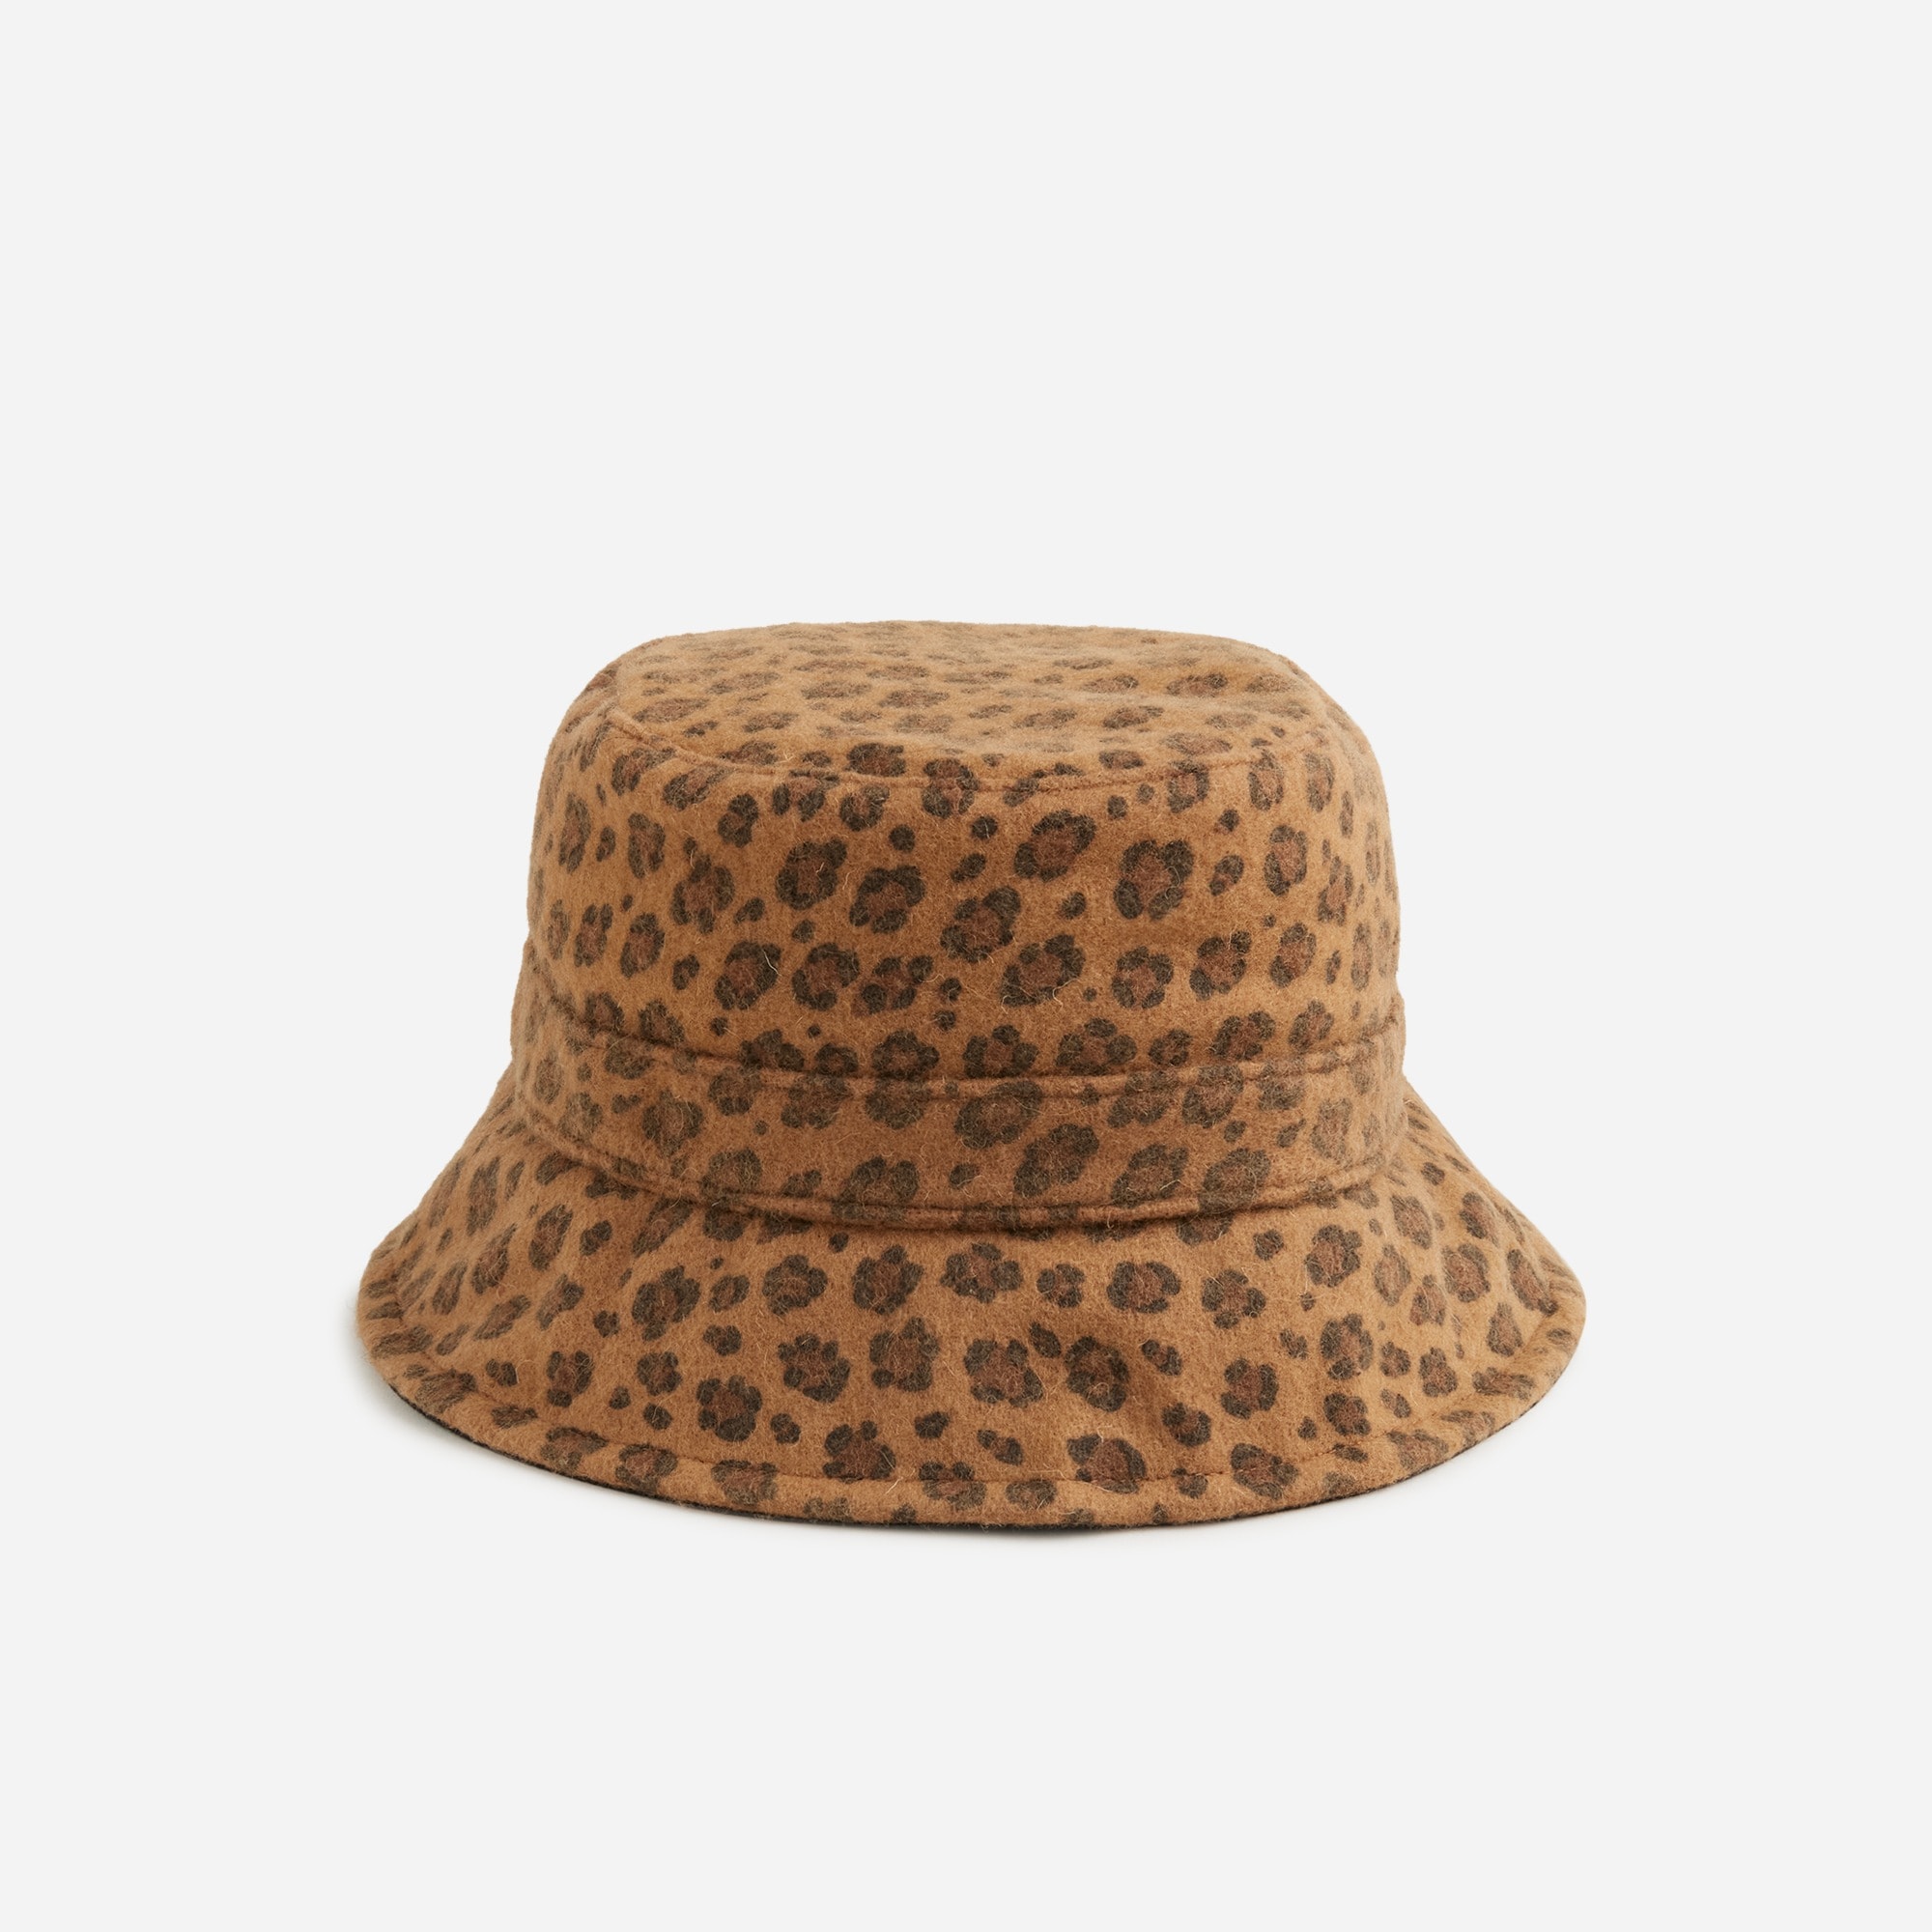  Girls' felted wool bucket hat in leopard